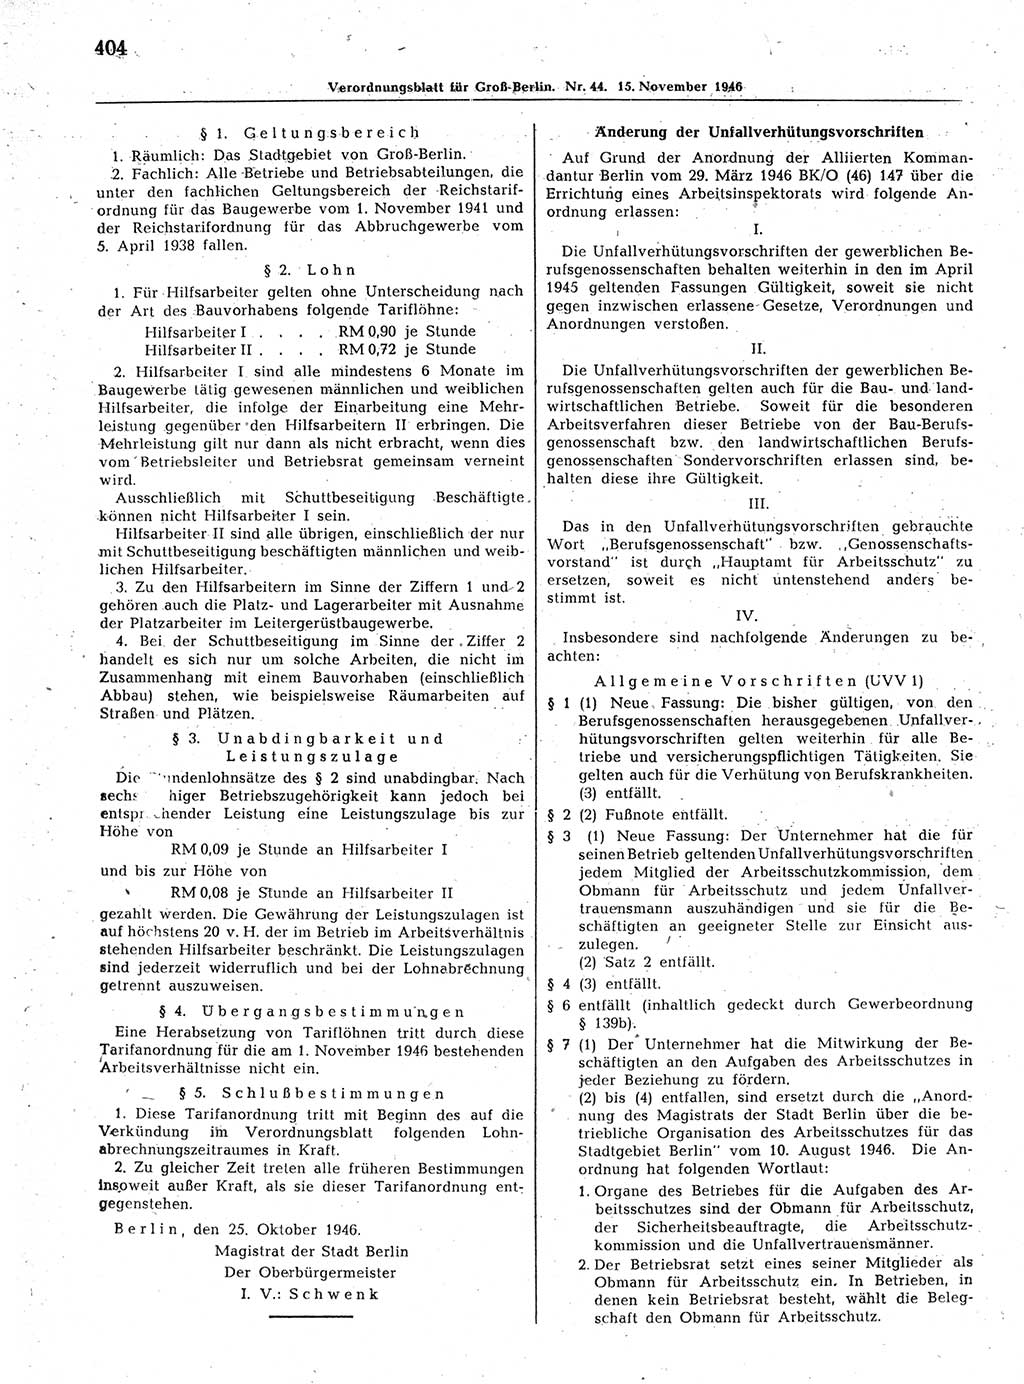 Verordnungsblatt (VOBl.) der Stadt Berlin, für Groß-Berlin 1946, Seite 404 (VOBl. Bln. 1946, S. 404)